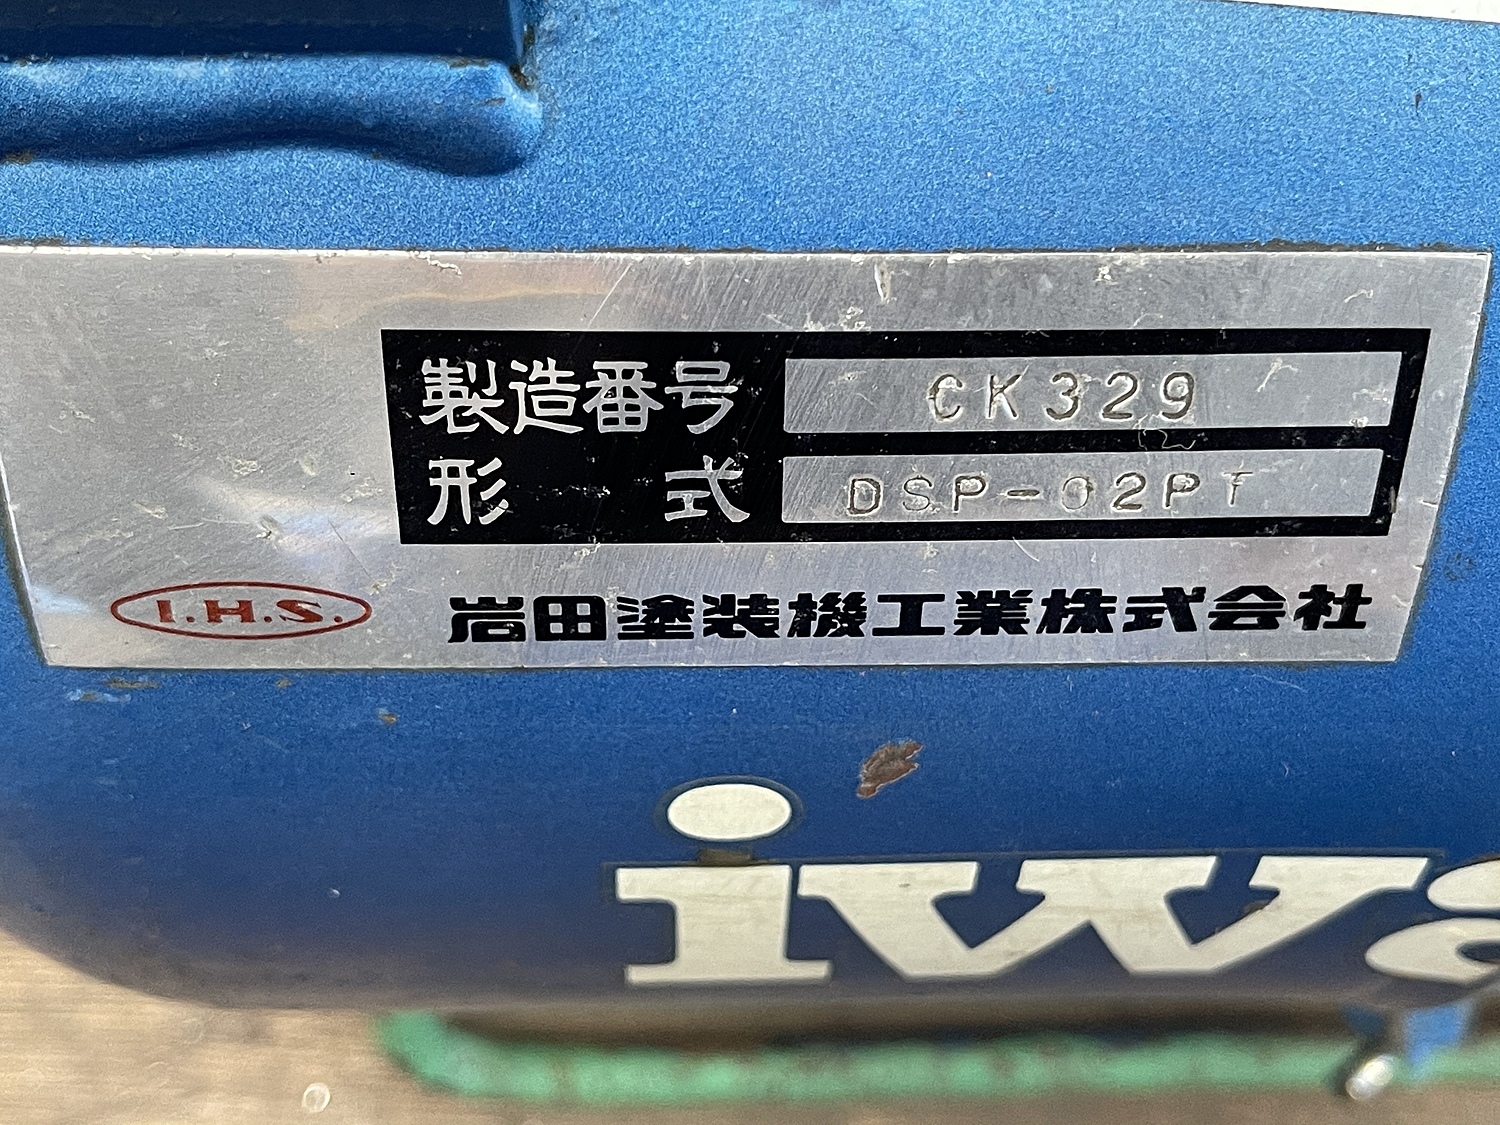 C130807 レシプロコンプレッサー アネスト岩田 DCS-02PT | 株式会社 小林機械